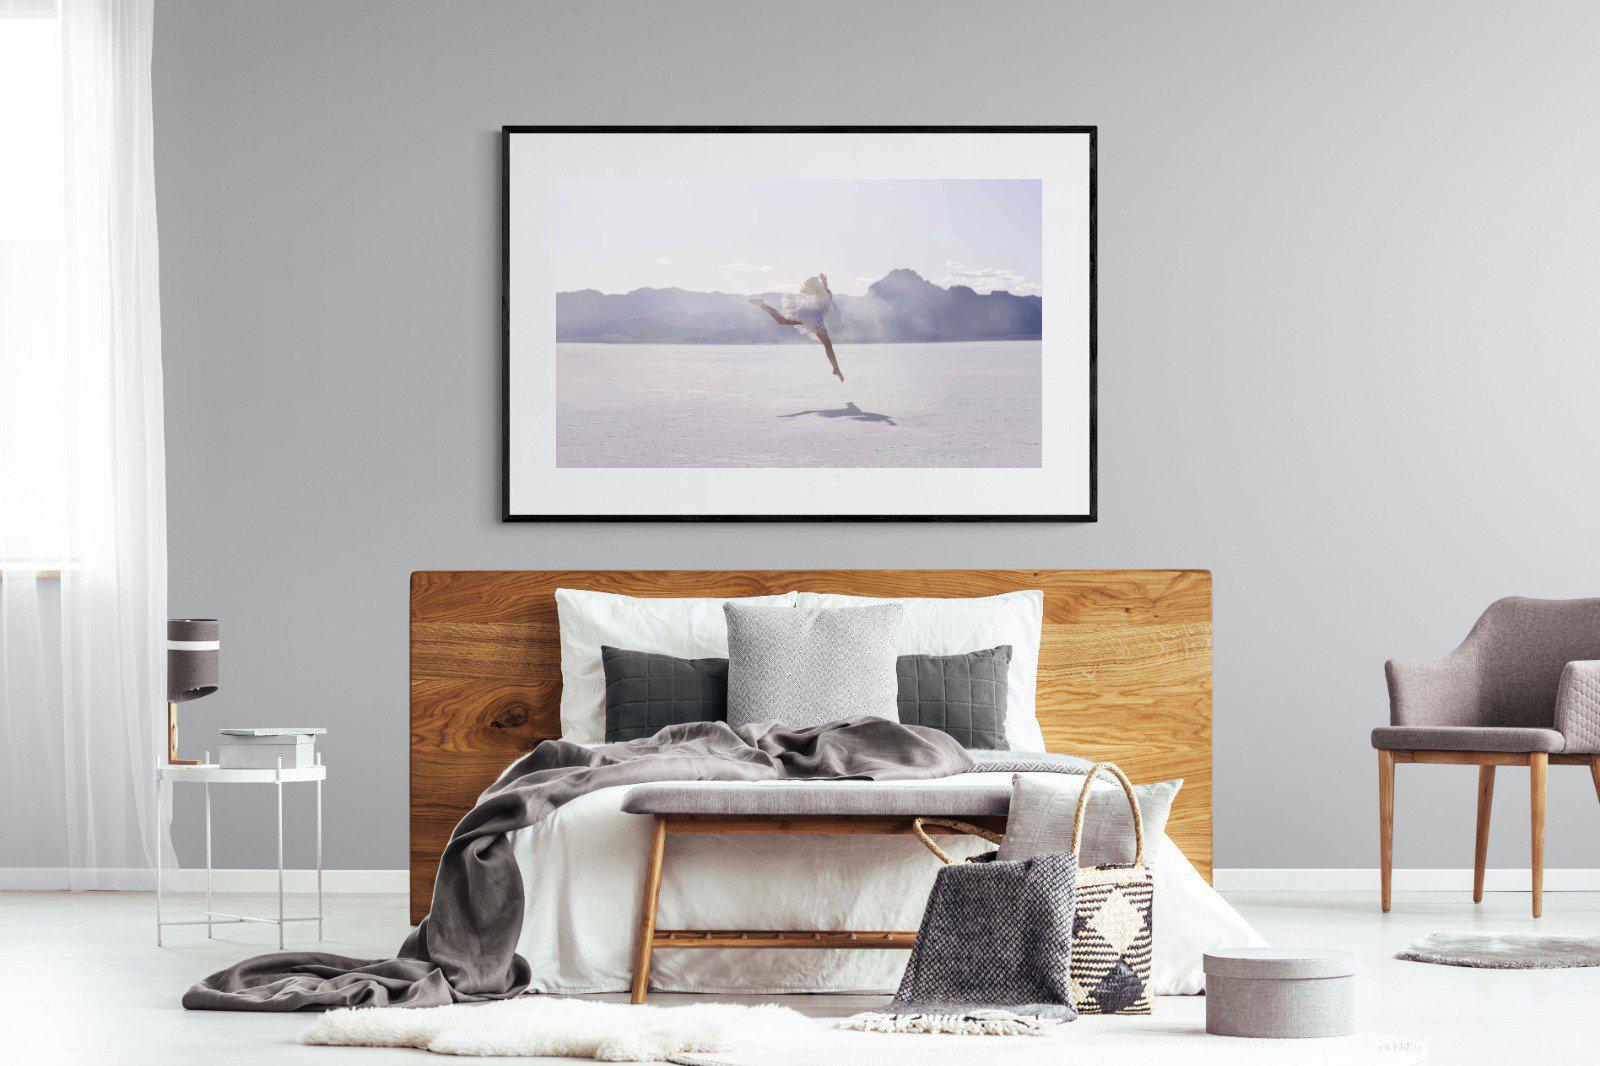 Dancing in the Desert-Wall_Art-150 x 100cm-Framed Print-Black-Pixalot